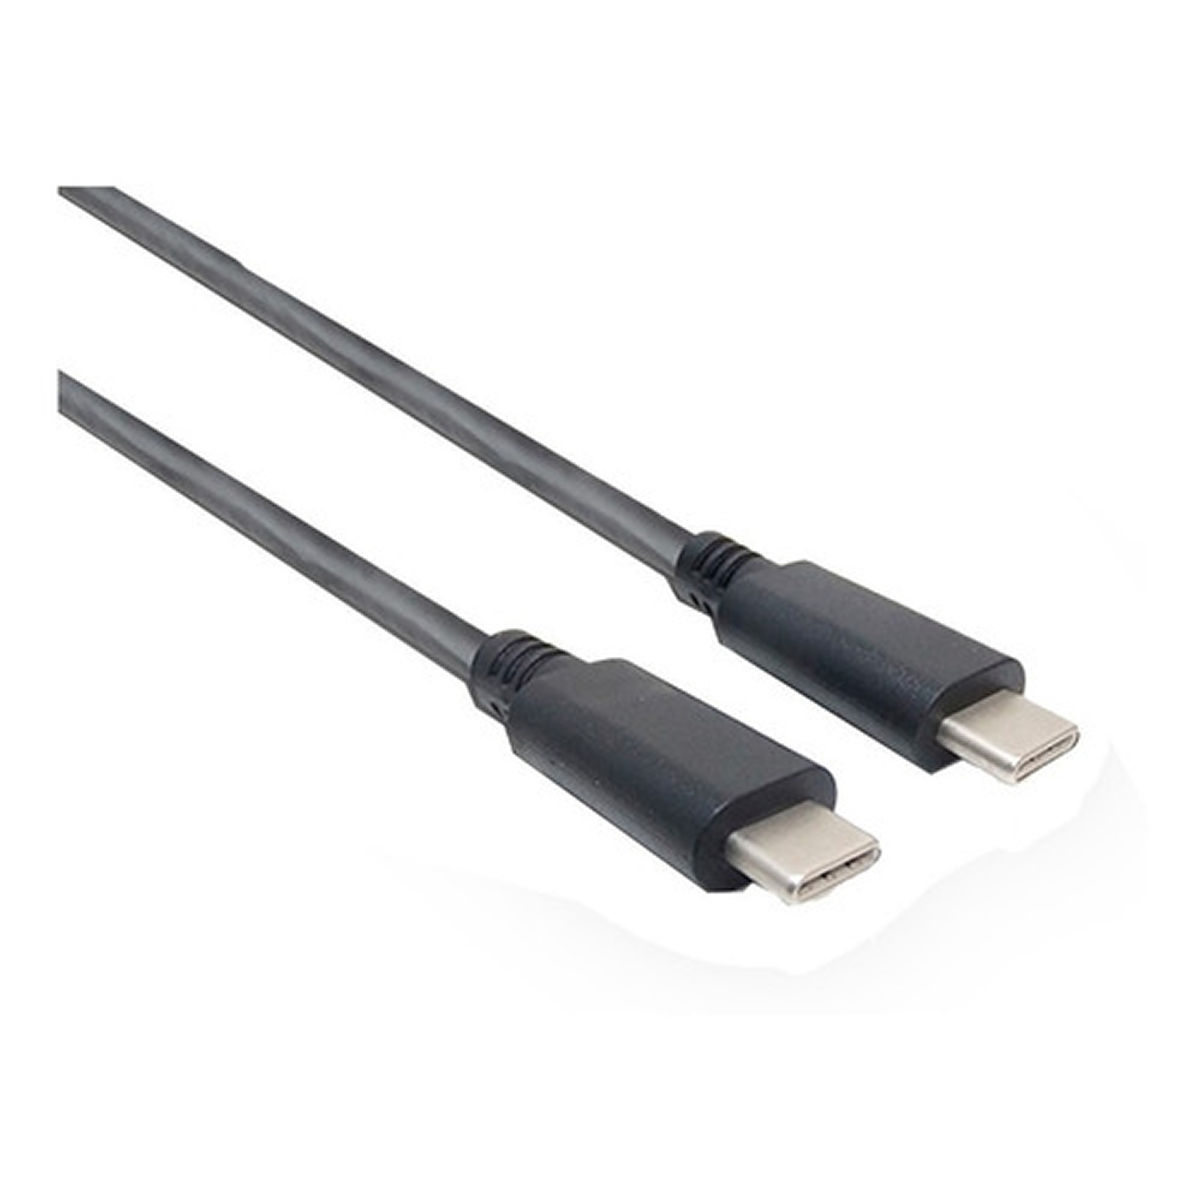 CABLE USB-C/USB-C M/M 1MT NISUTA CUSC1 3.1